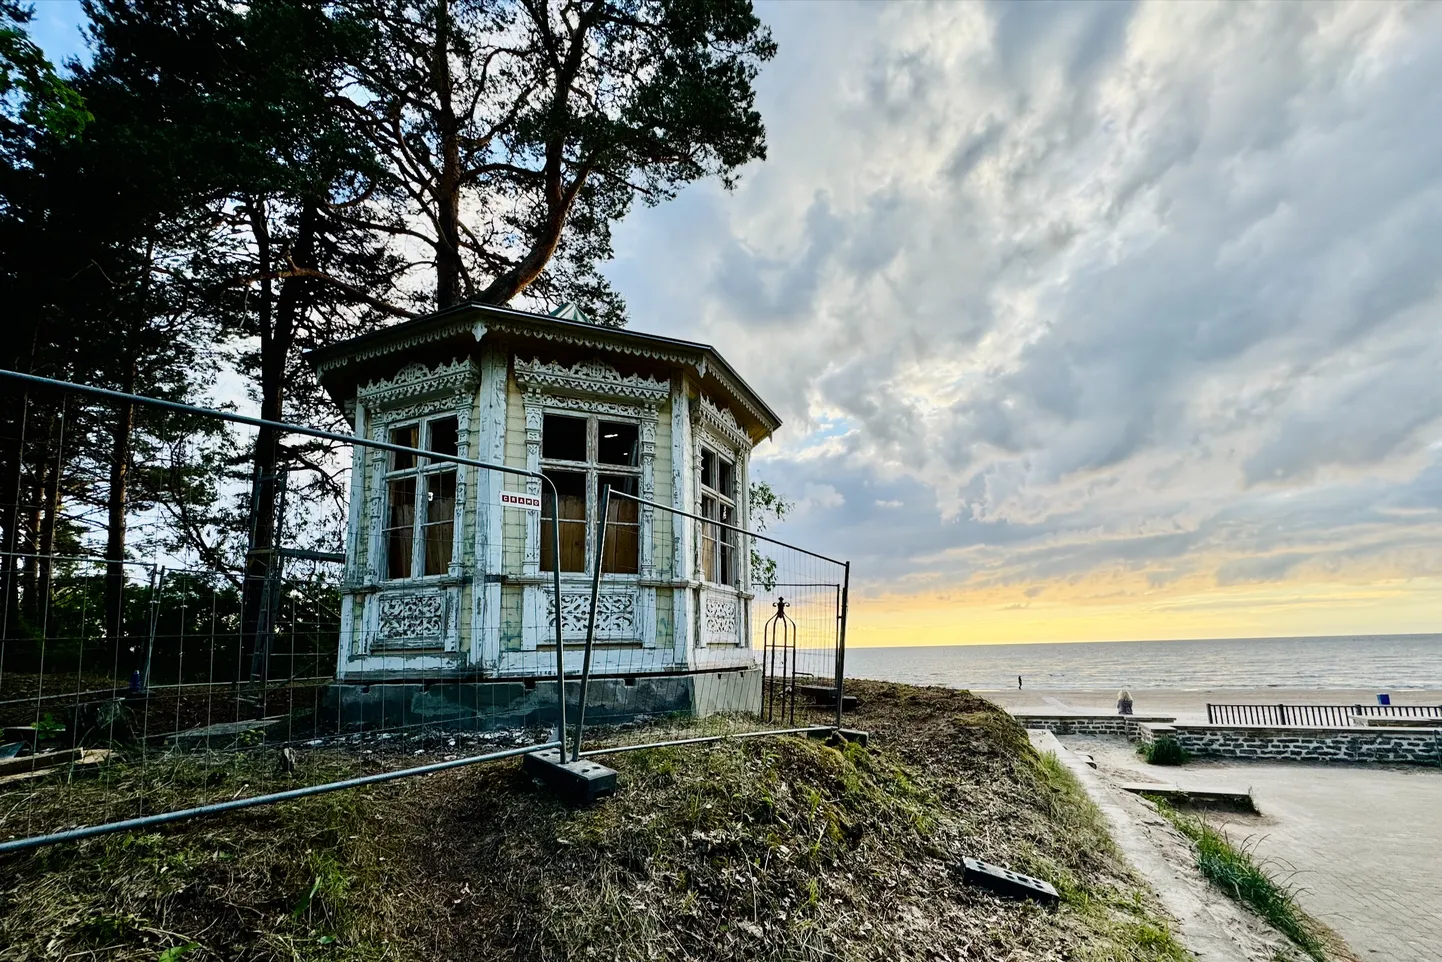 Павильон Чайковского, с позапрошлого века стоящий на песчаной дюне морского побережья Нарва-Йыэсуу, сейчас начали реставрировать.